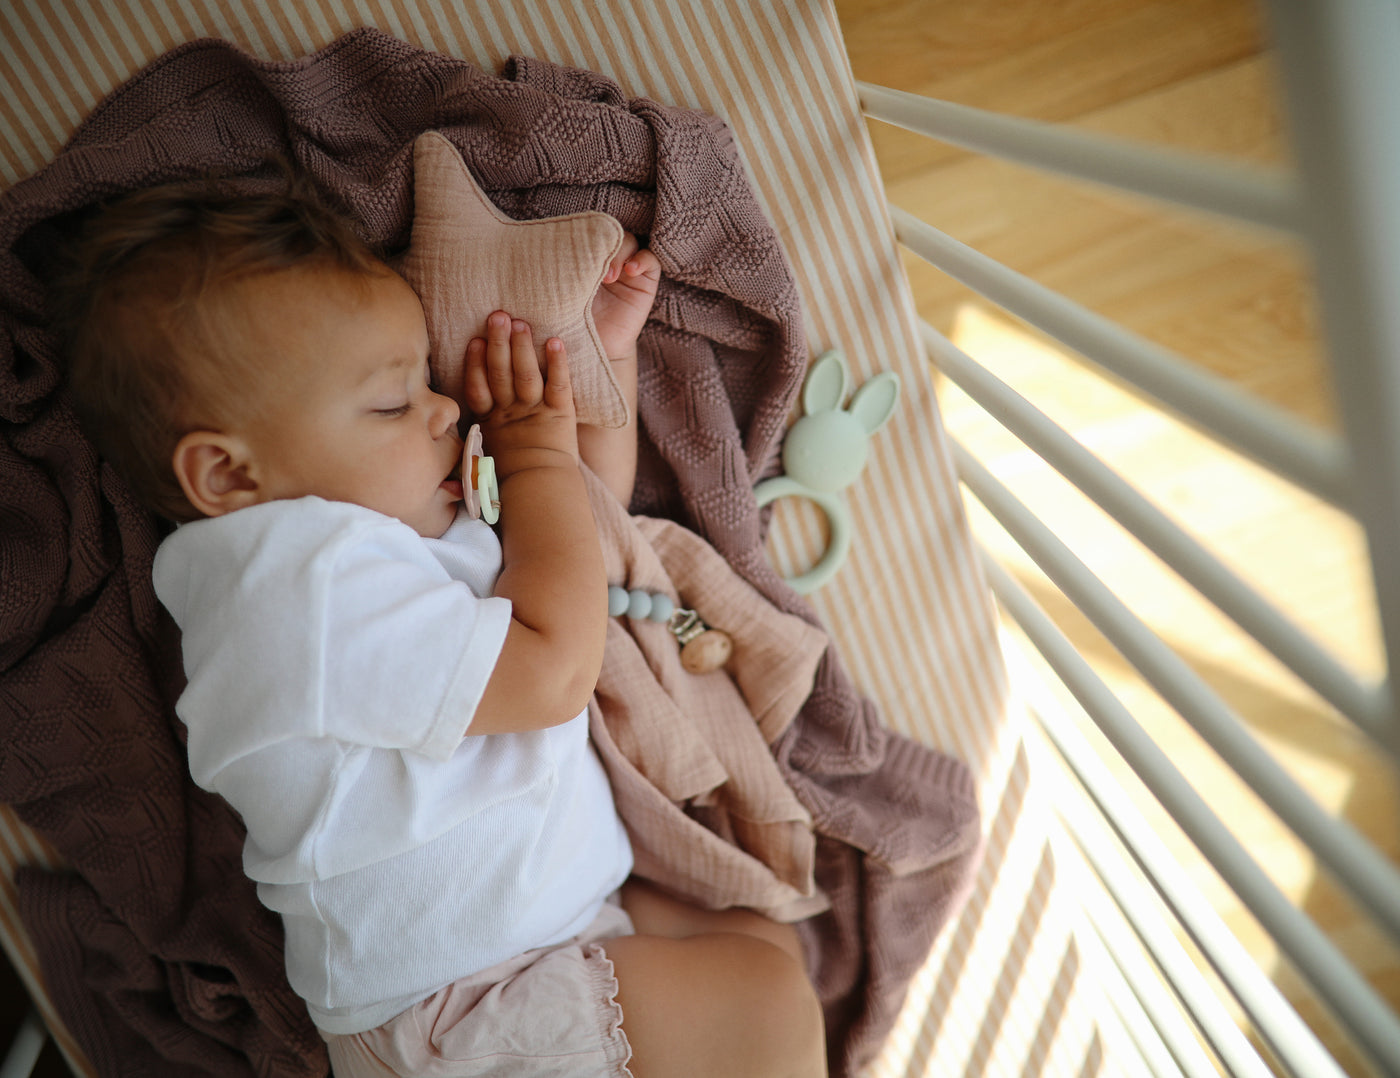 Mushie Organic Star Baby Comforter - Blush